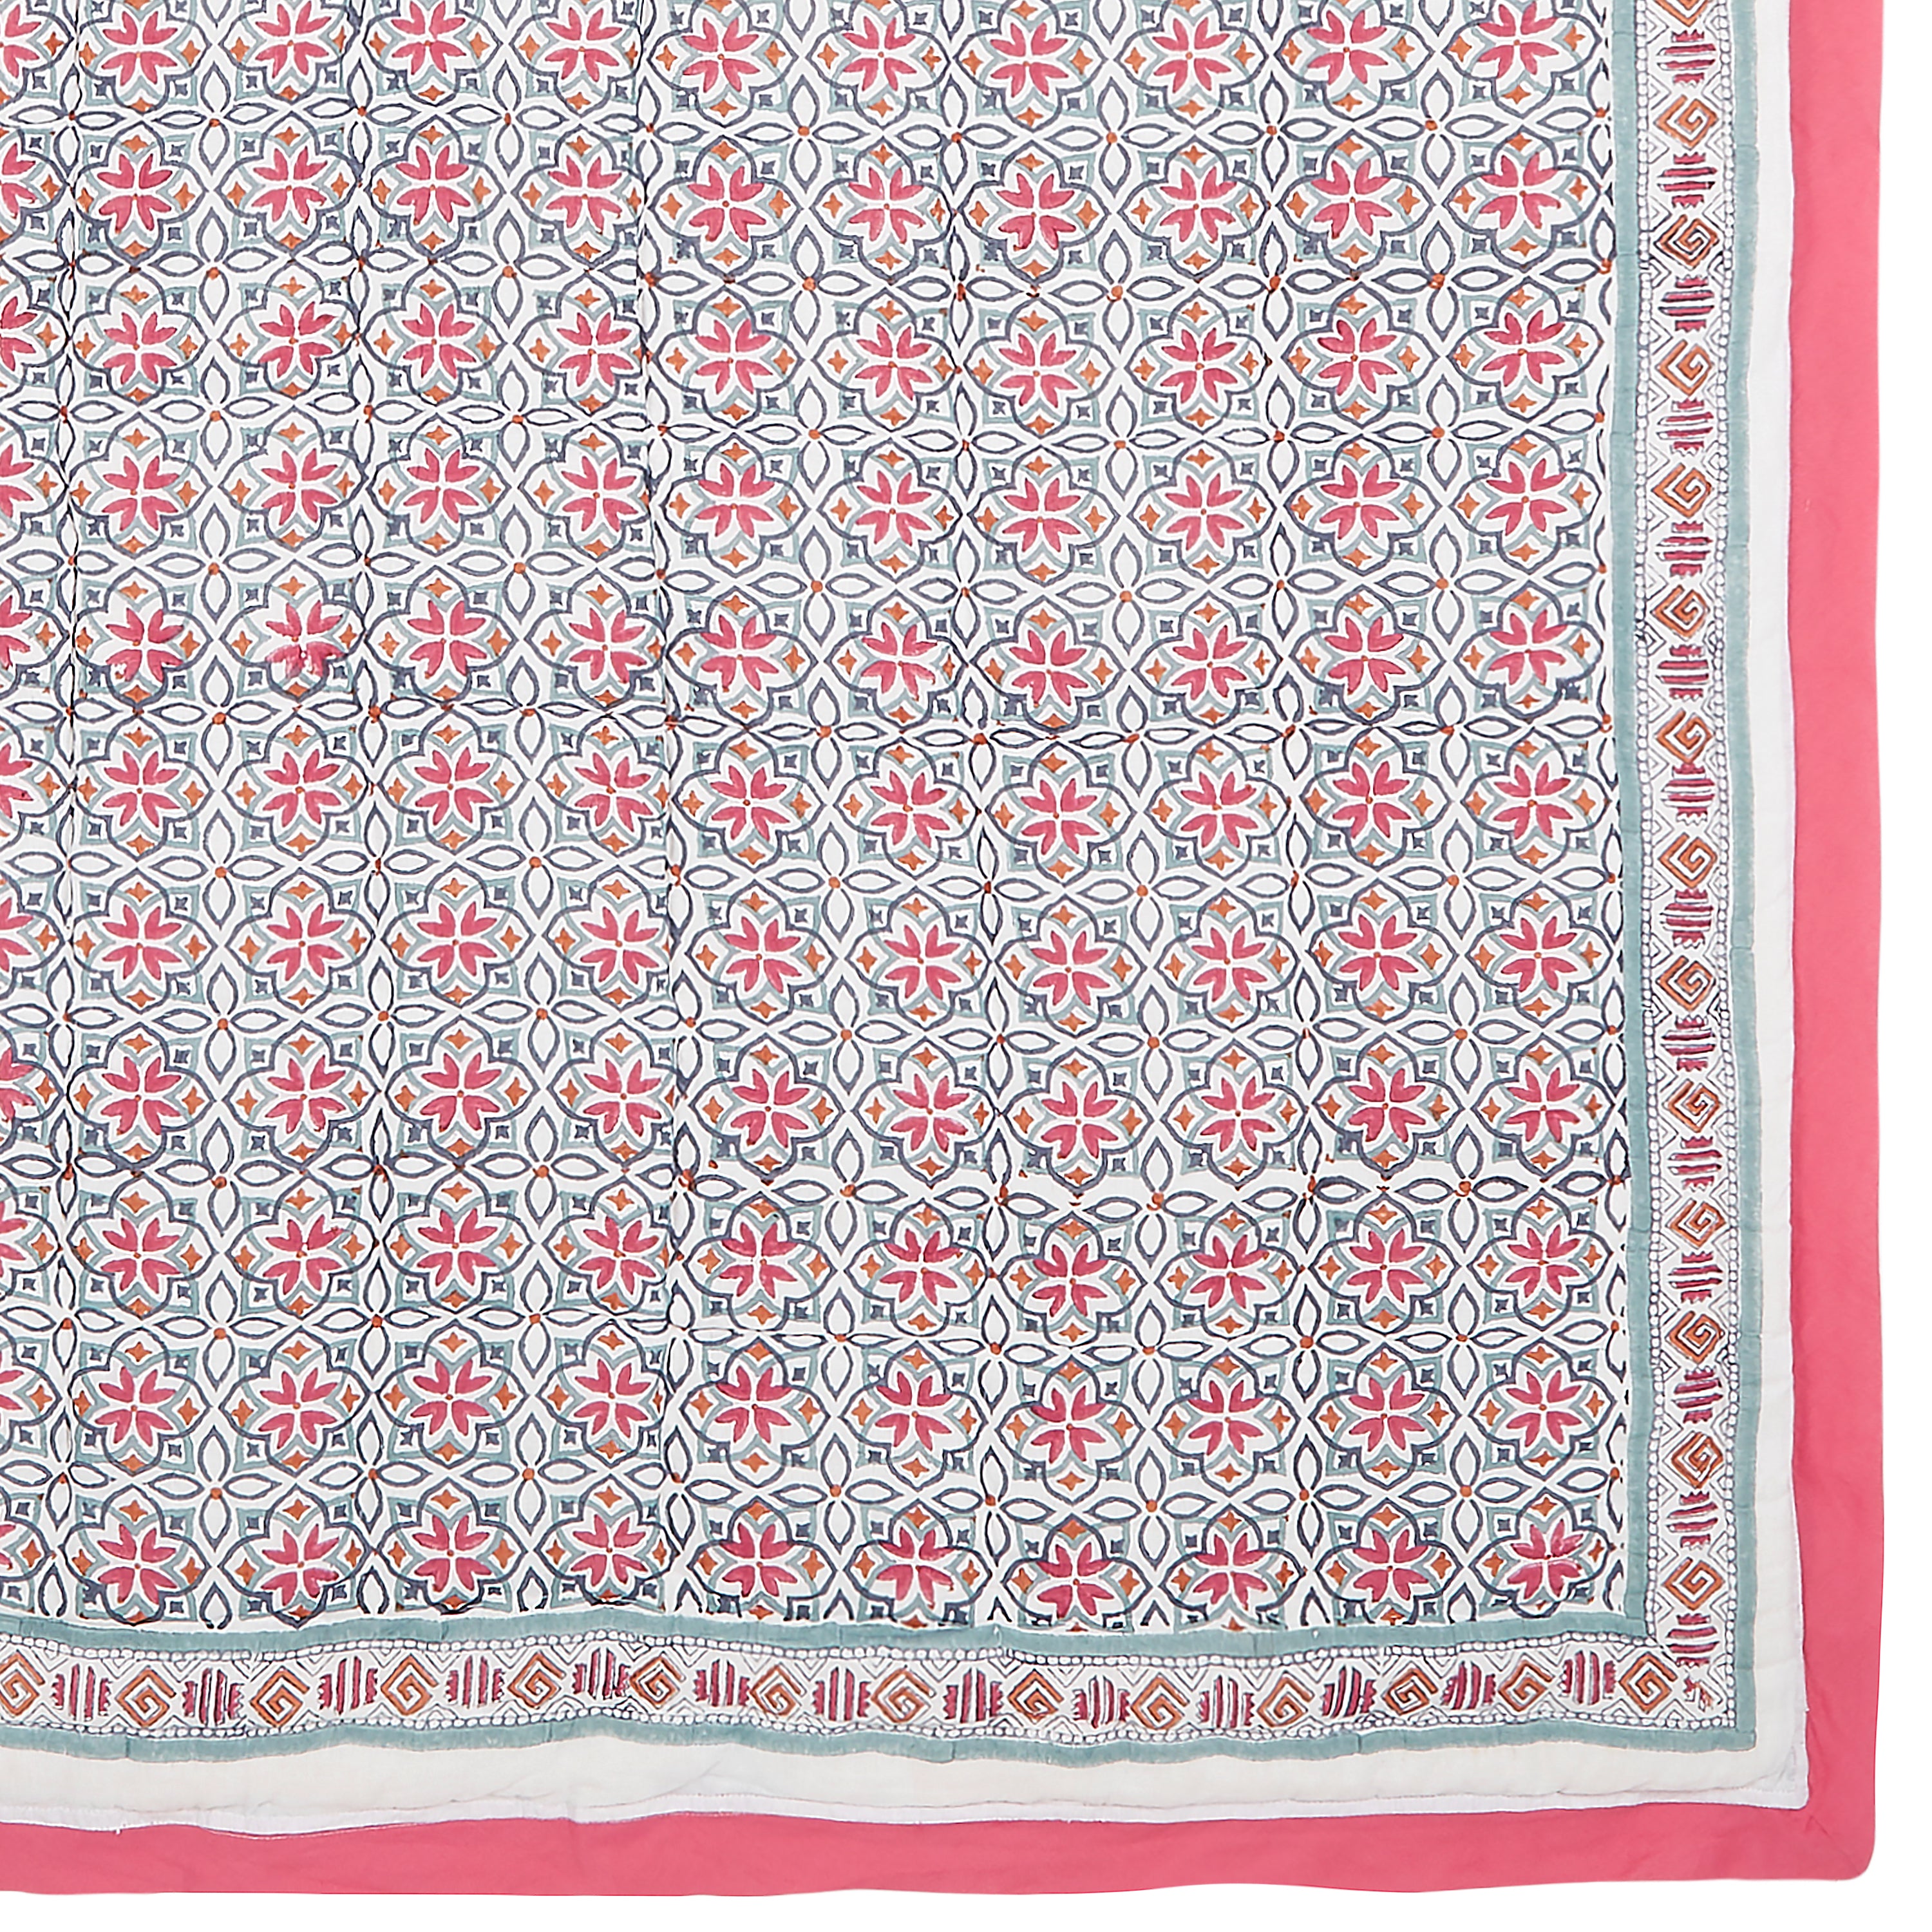 Seminyak Pink Cotton Quilt